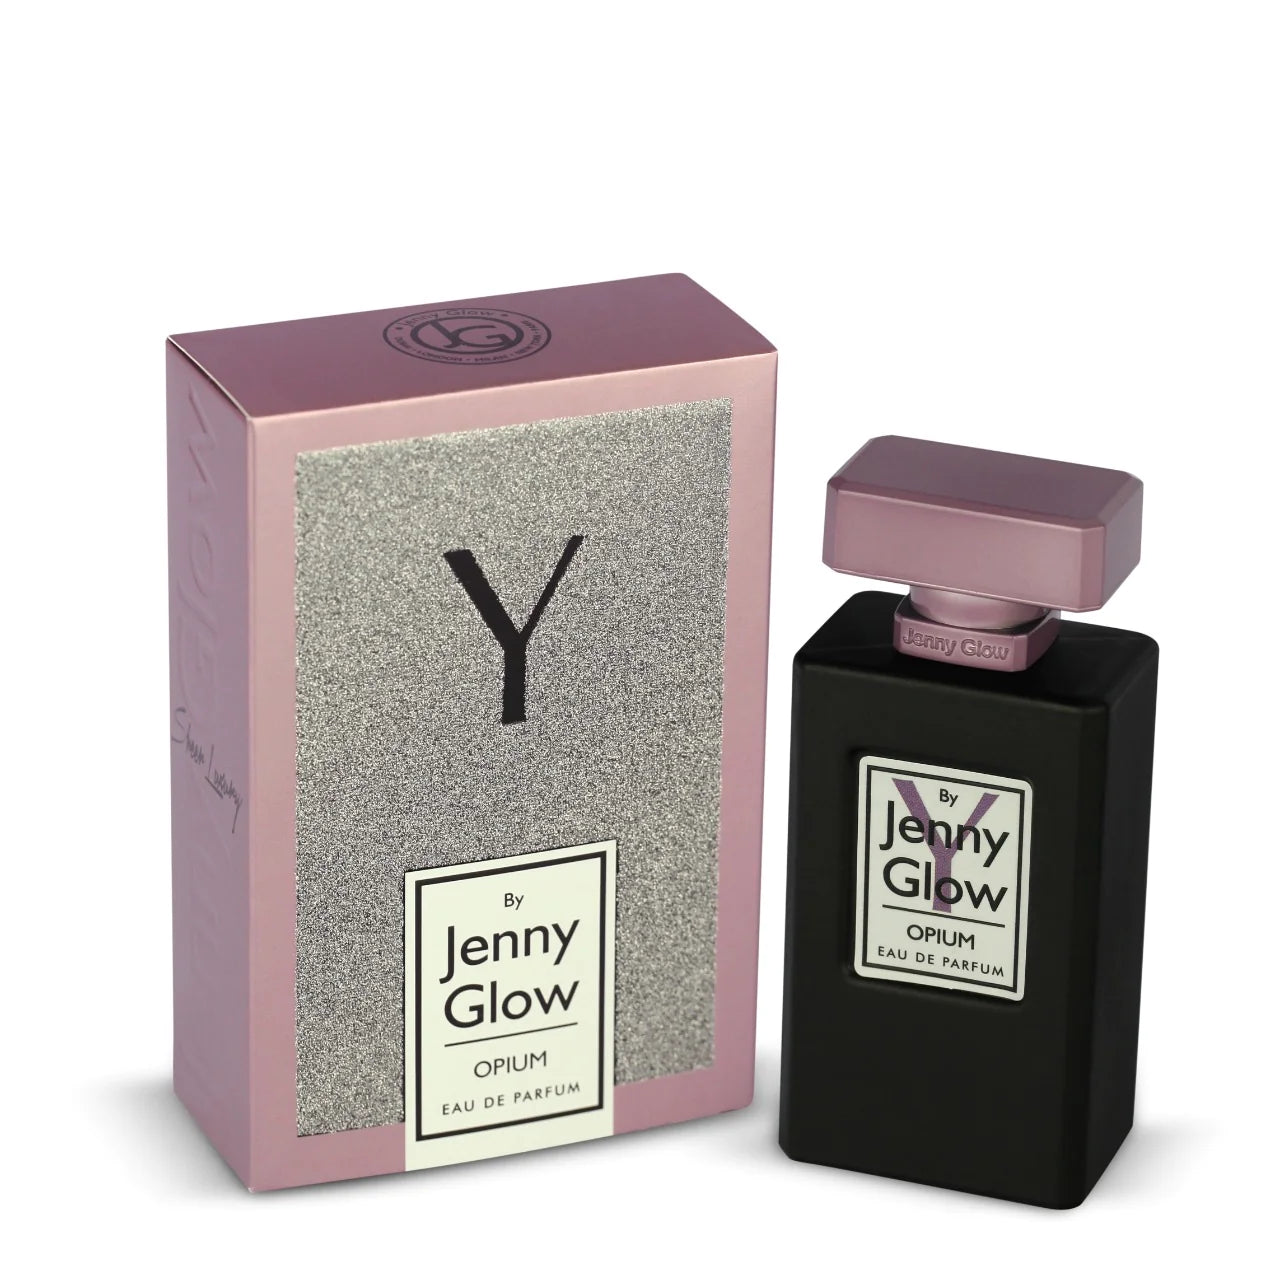 Y By Jenny Glow Opium Eau De Parfum